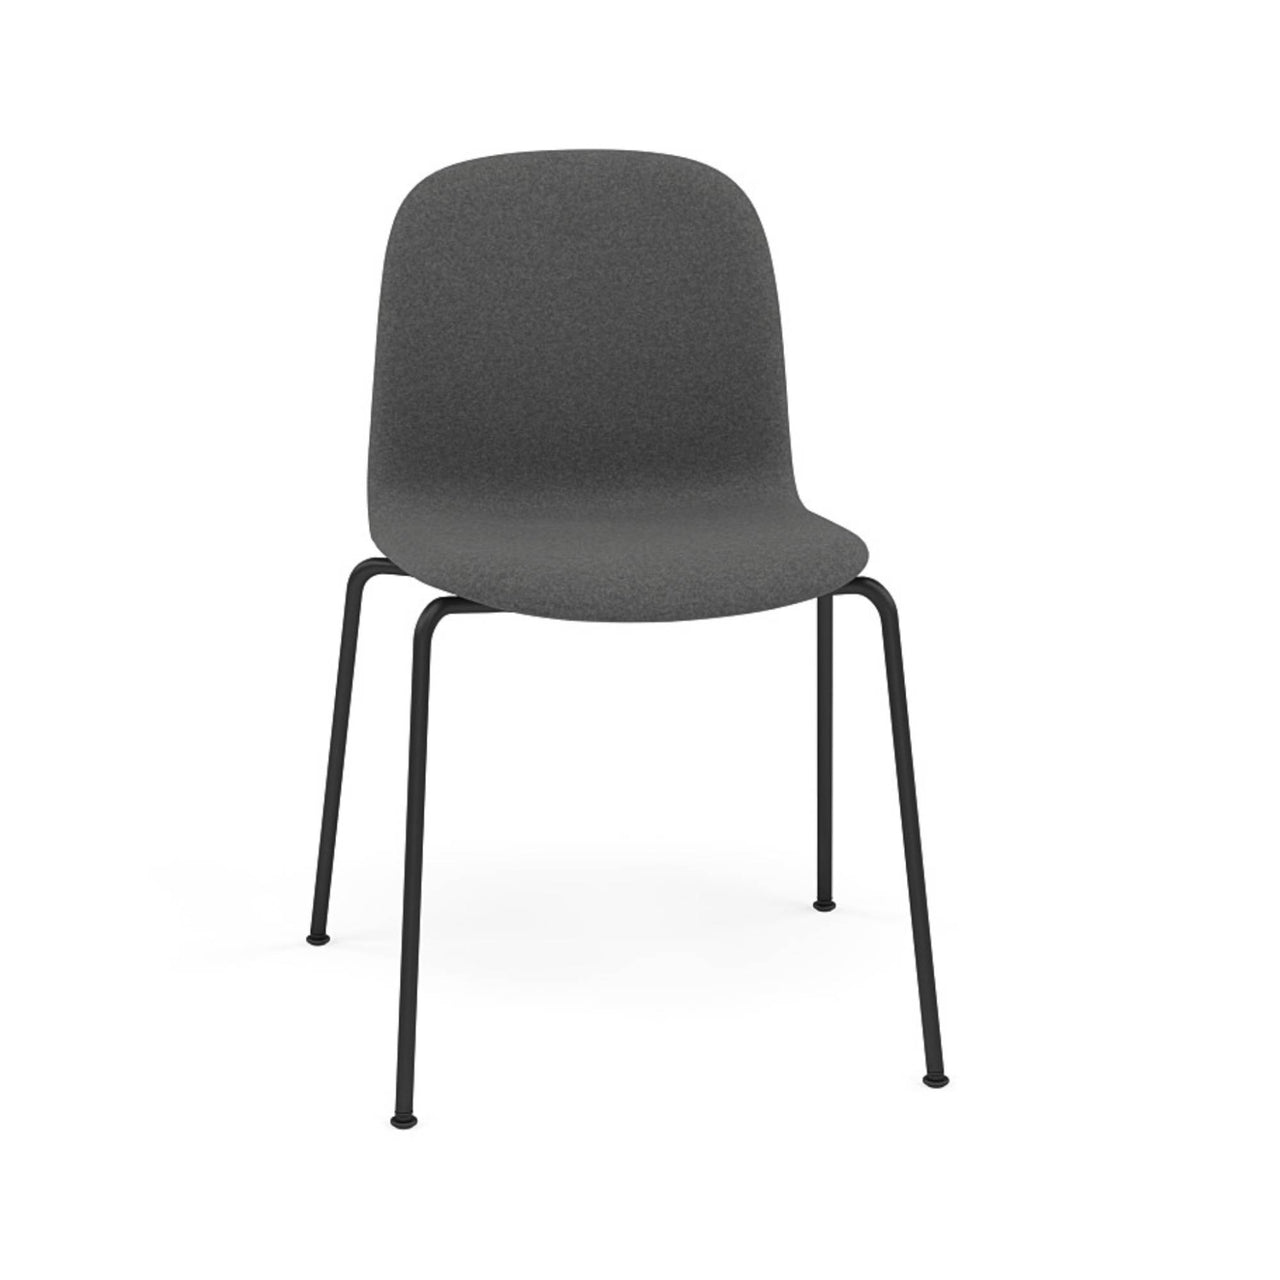 Visu Chair: Tube Base + Upholstered + Black